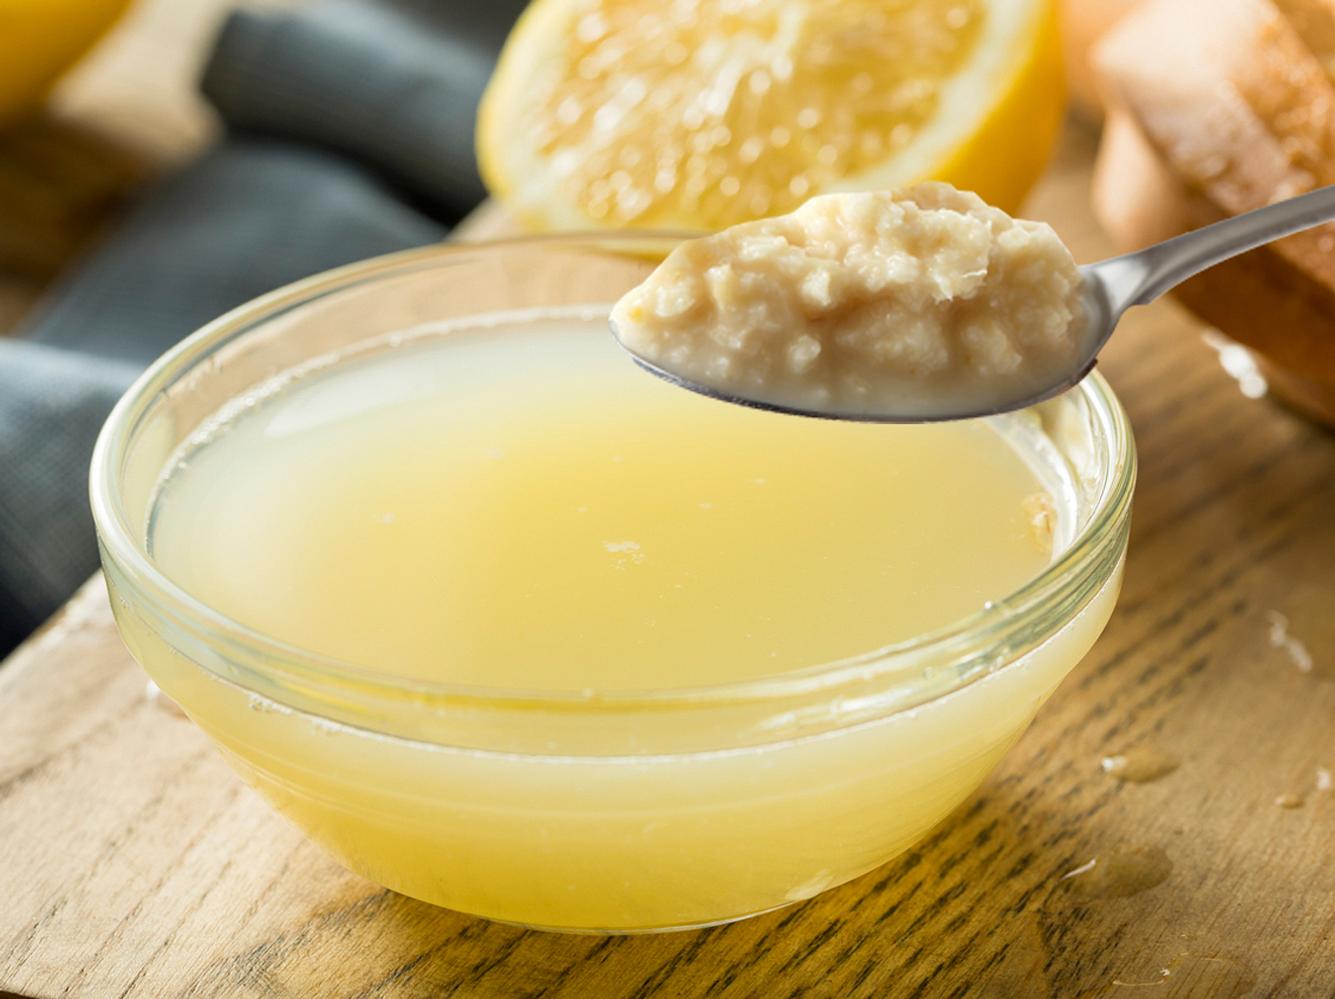 Zitrone und Meerrettich helfen zusammen gegen Blasenentzündung.